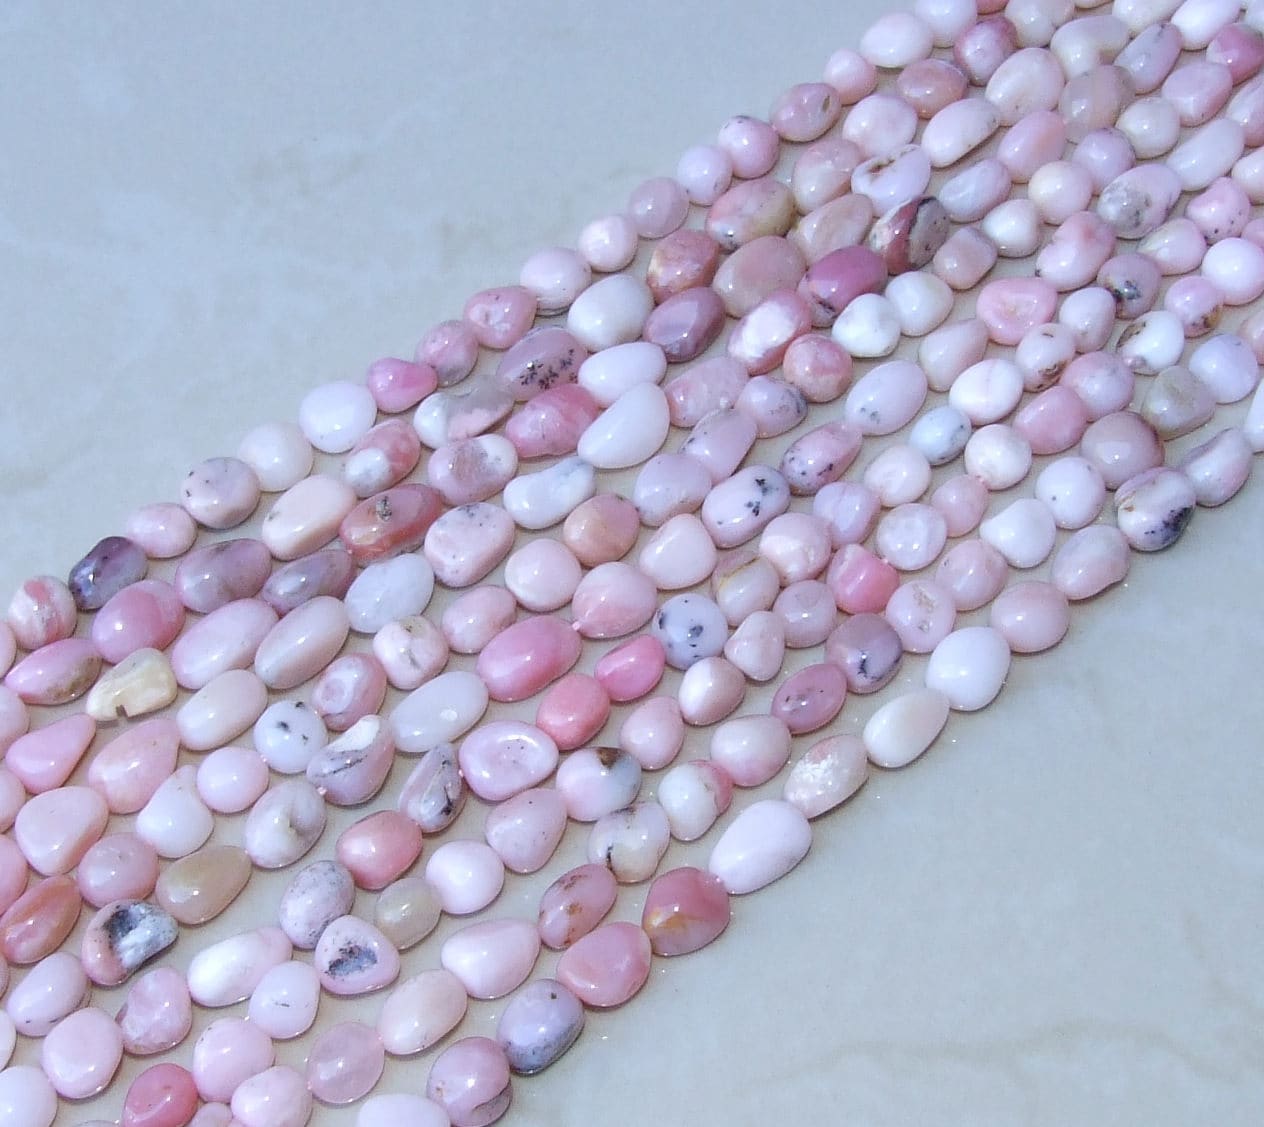 Peruvian Pink Opal Beads - Gemstone Beads - Pink Opal Nuggets